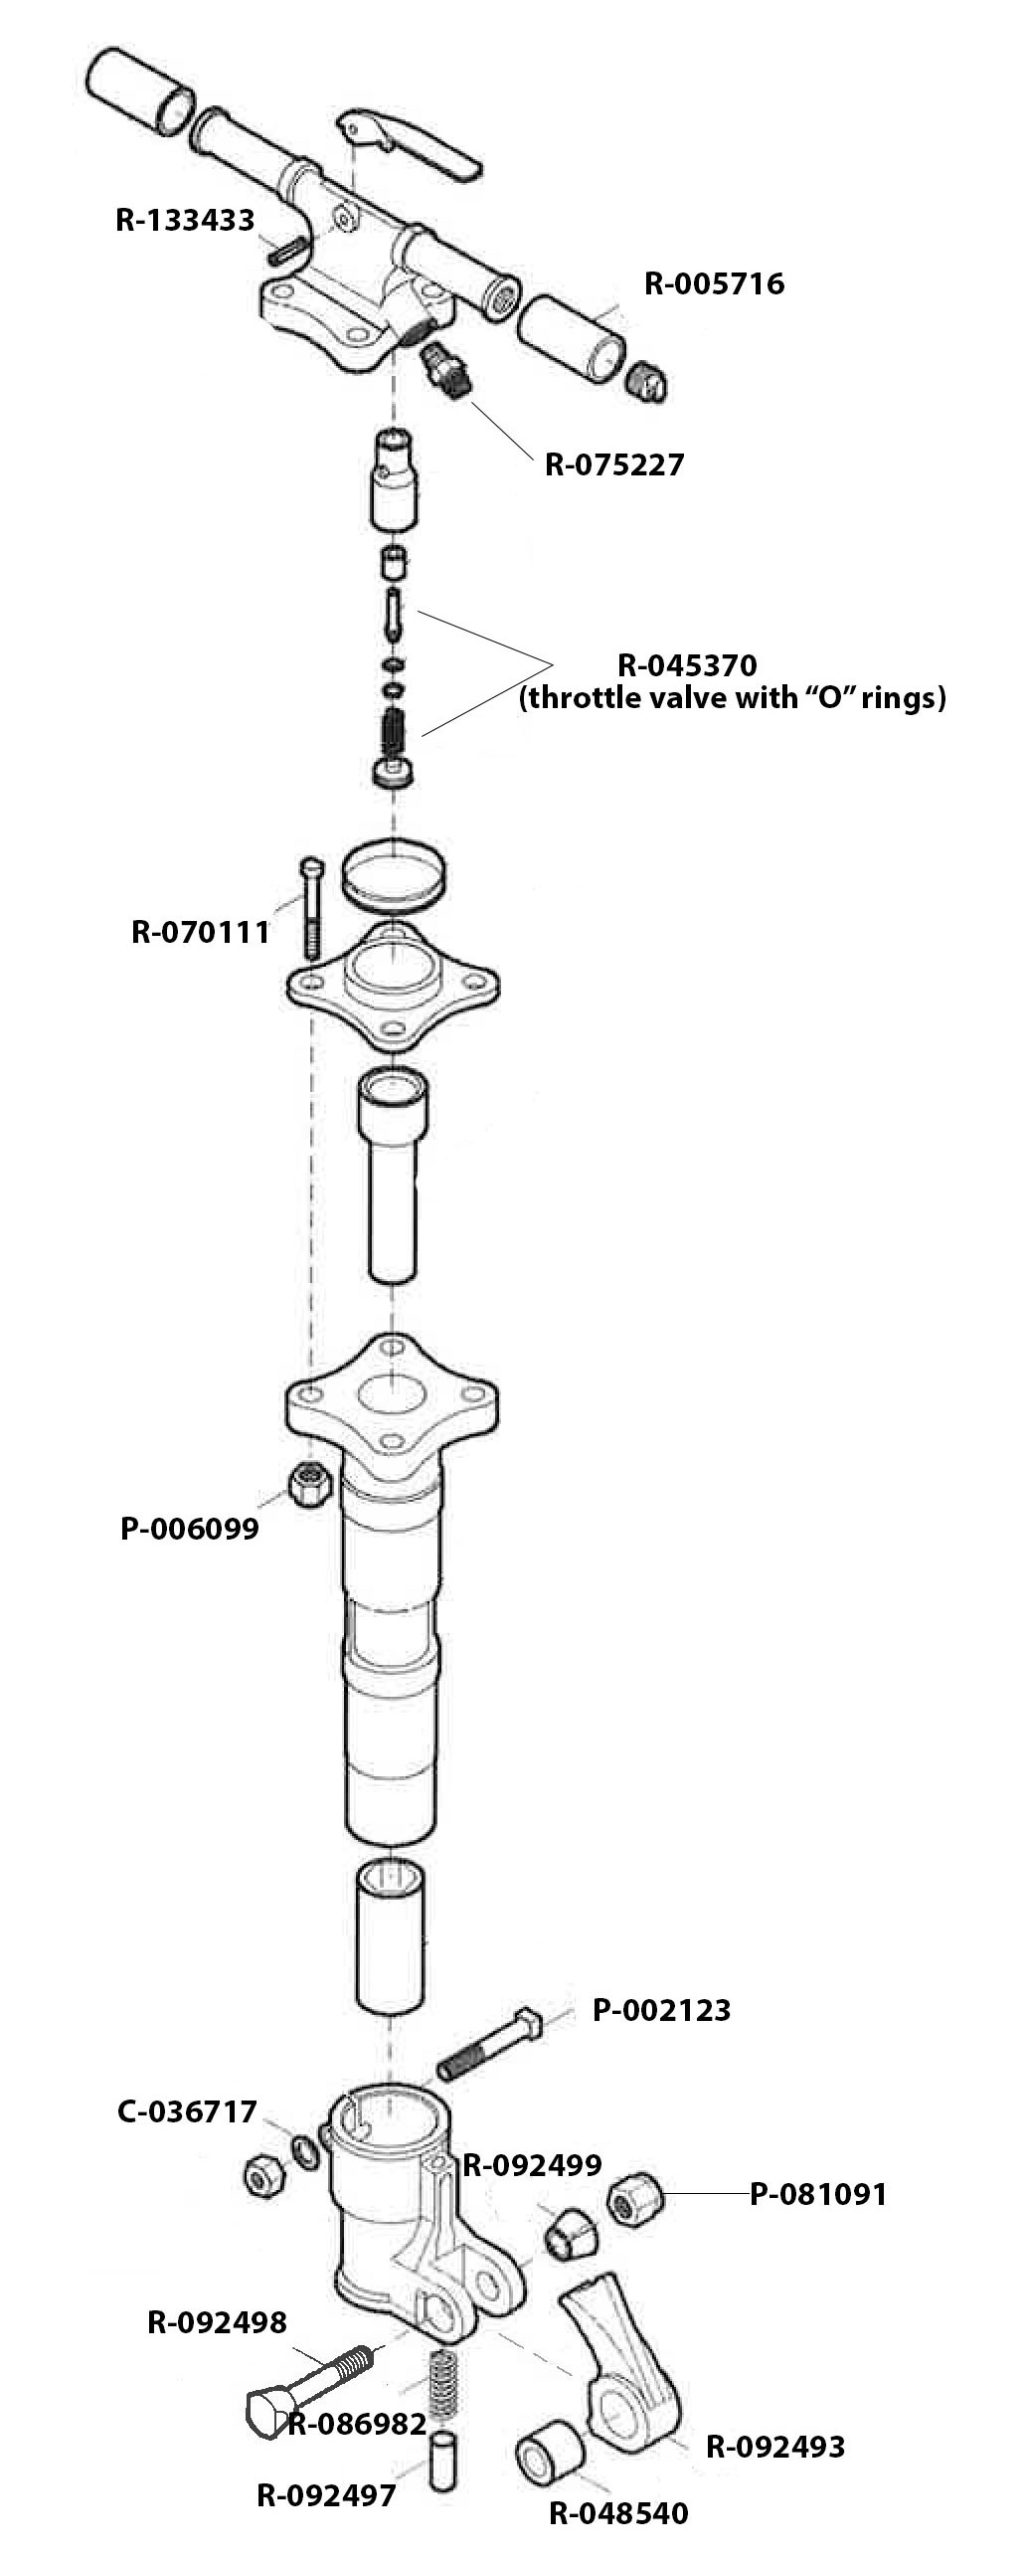 Marteau-piqueur pneumatique - CP 0112 series - Chicago Pneumatic